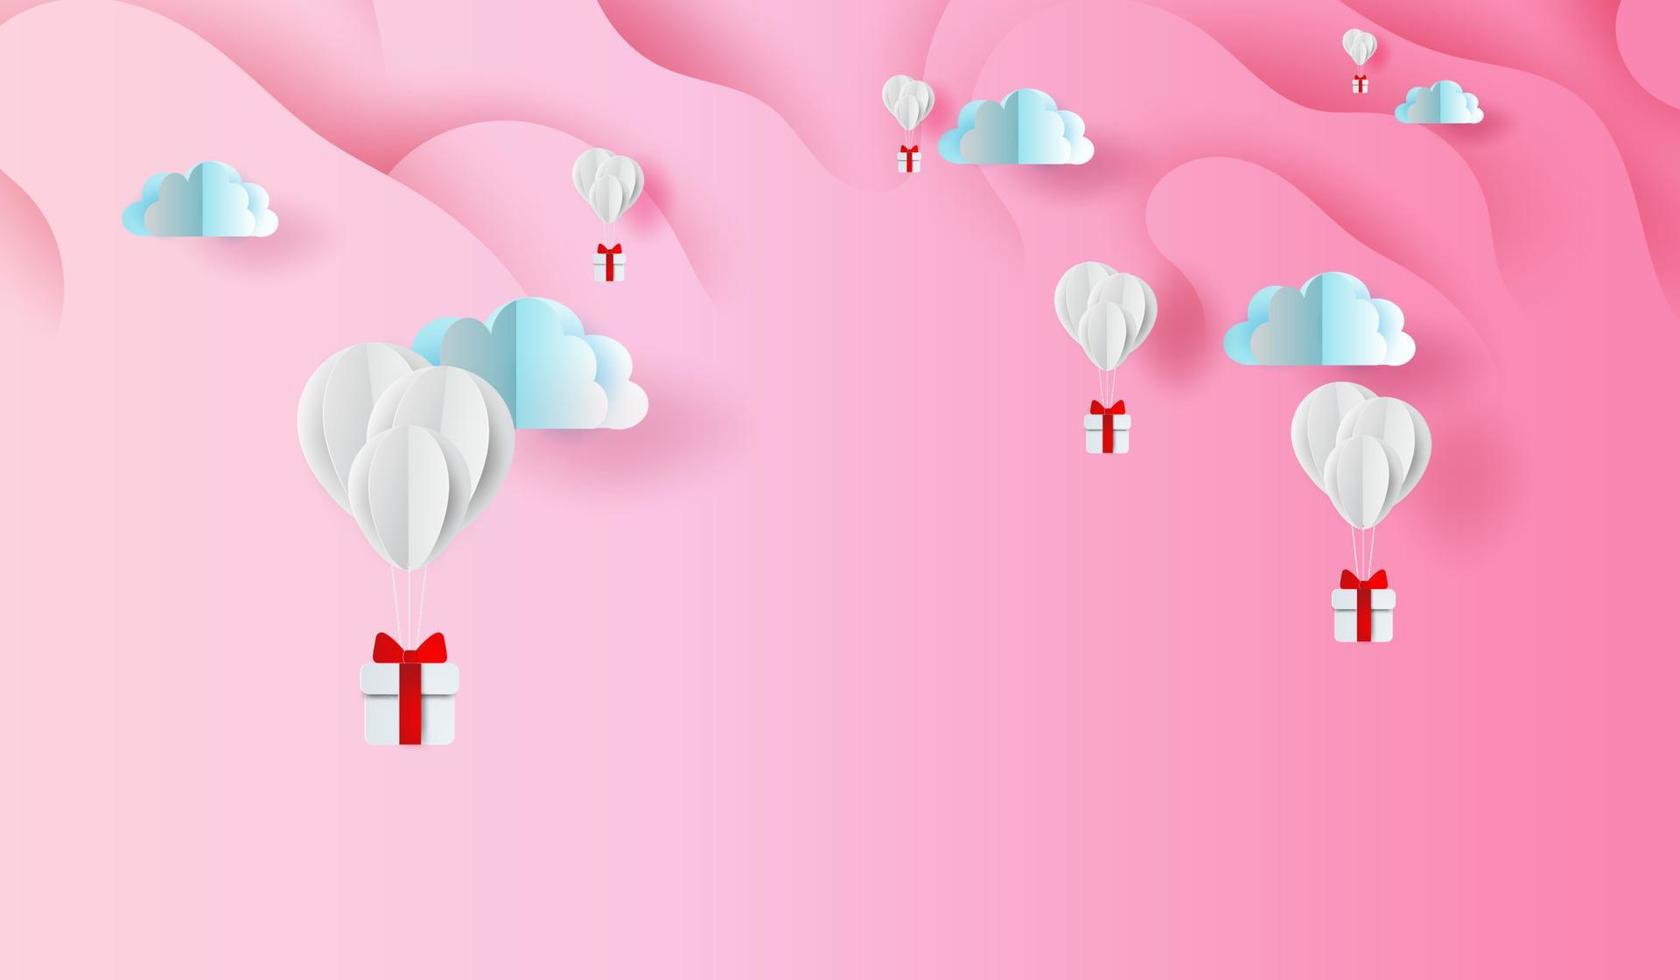 3D-Papierkunst und Handwerksdesign von Ballongeschenken auf abstraktem, kurvenförmigem rosa Himmelshintergrund, schwebend mit Geschenkbox in den Luftwolken. Valentinstagskonzept. Elemente Hintergrundvektor für Grußkarte vektor